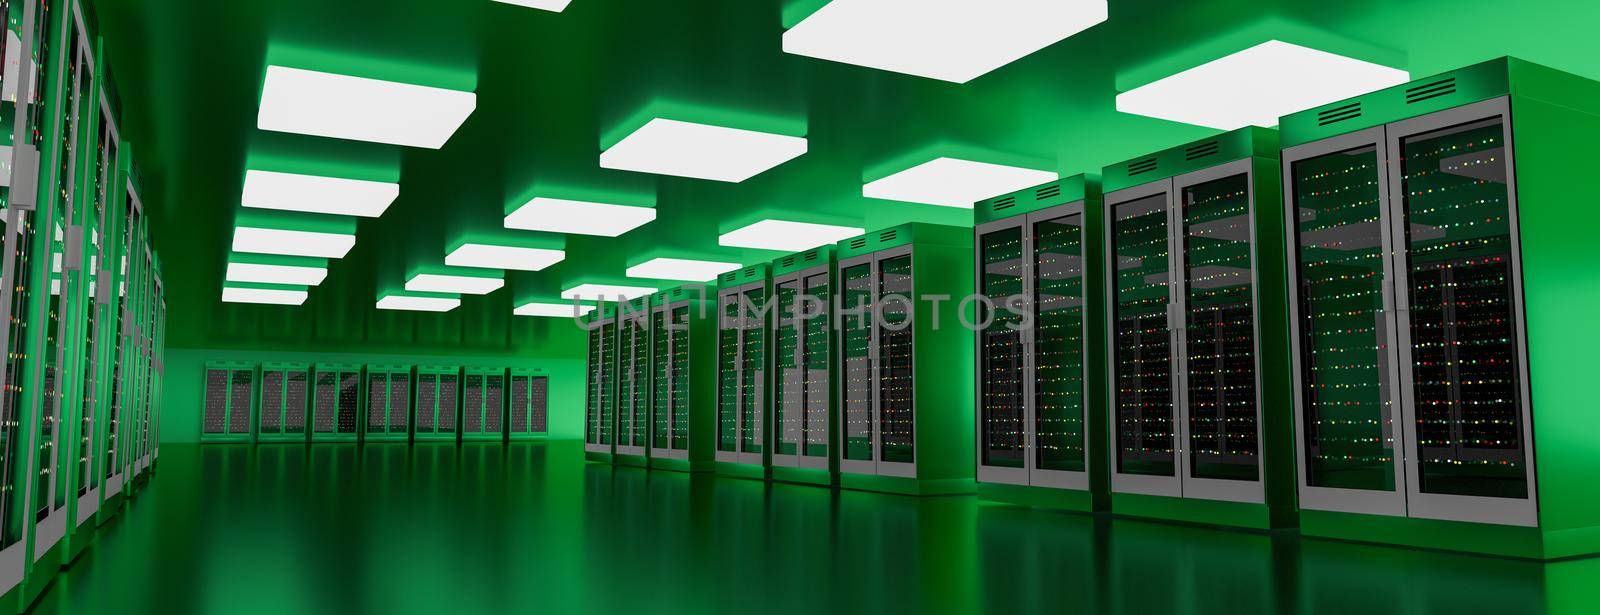 Server racks in server room cloud data center. Datacenter hardware cluster. Backup, hosting, mainframe, mining, farm and computer rack with storage information. 3D rendering. 3D illustration